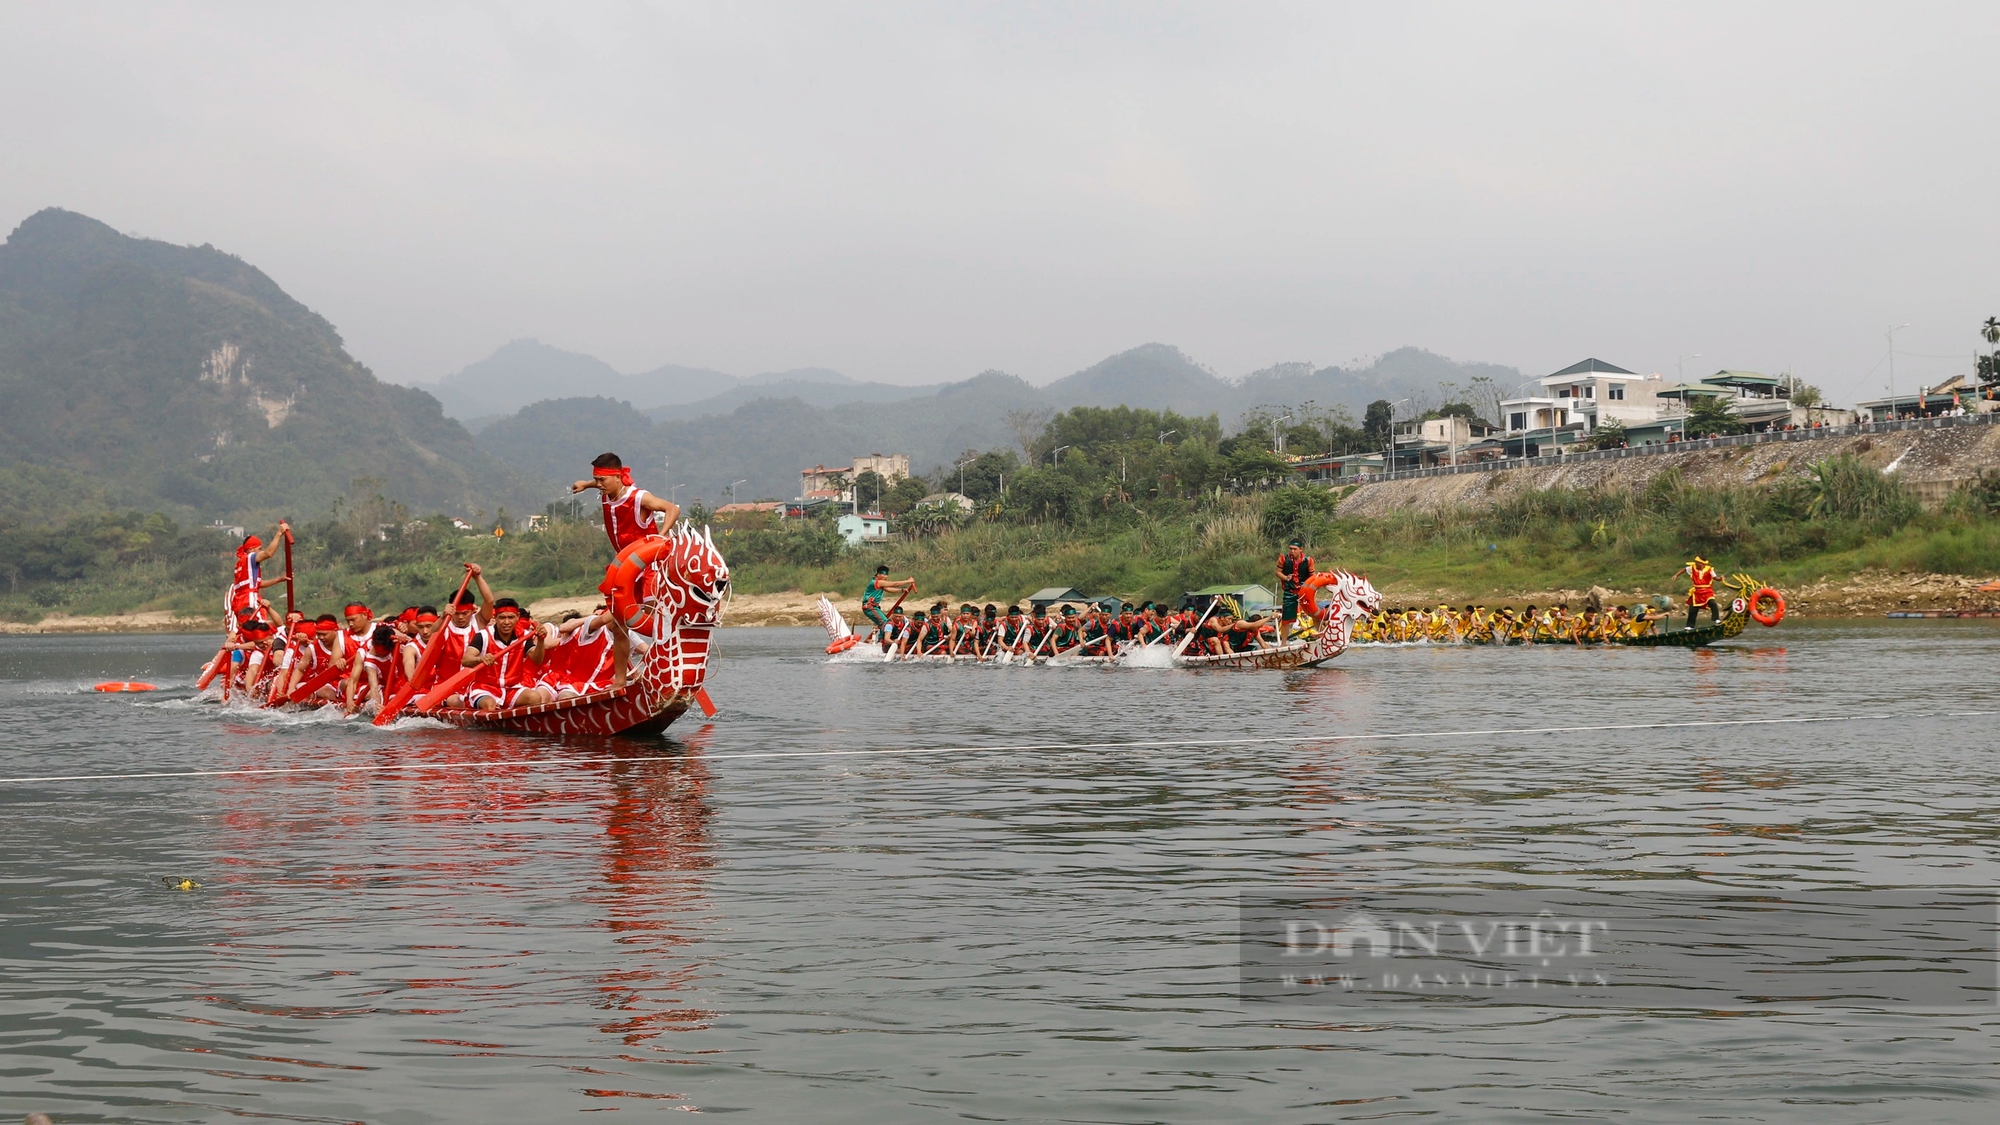 450 tay chải miền sơn cước gồng mình đua thuyền rồng trên sông Lô ở Tuyên Quang- Ảnh 2.